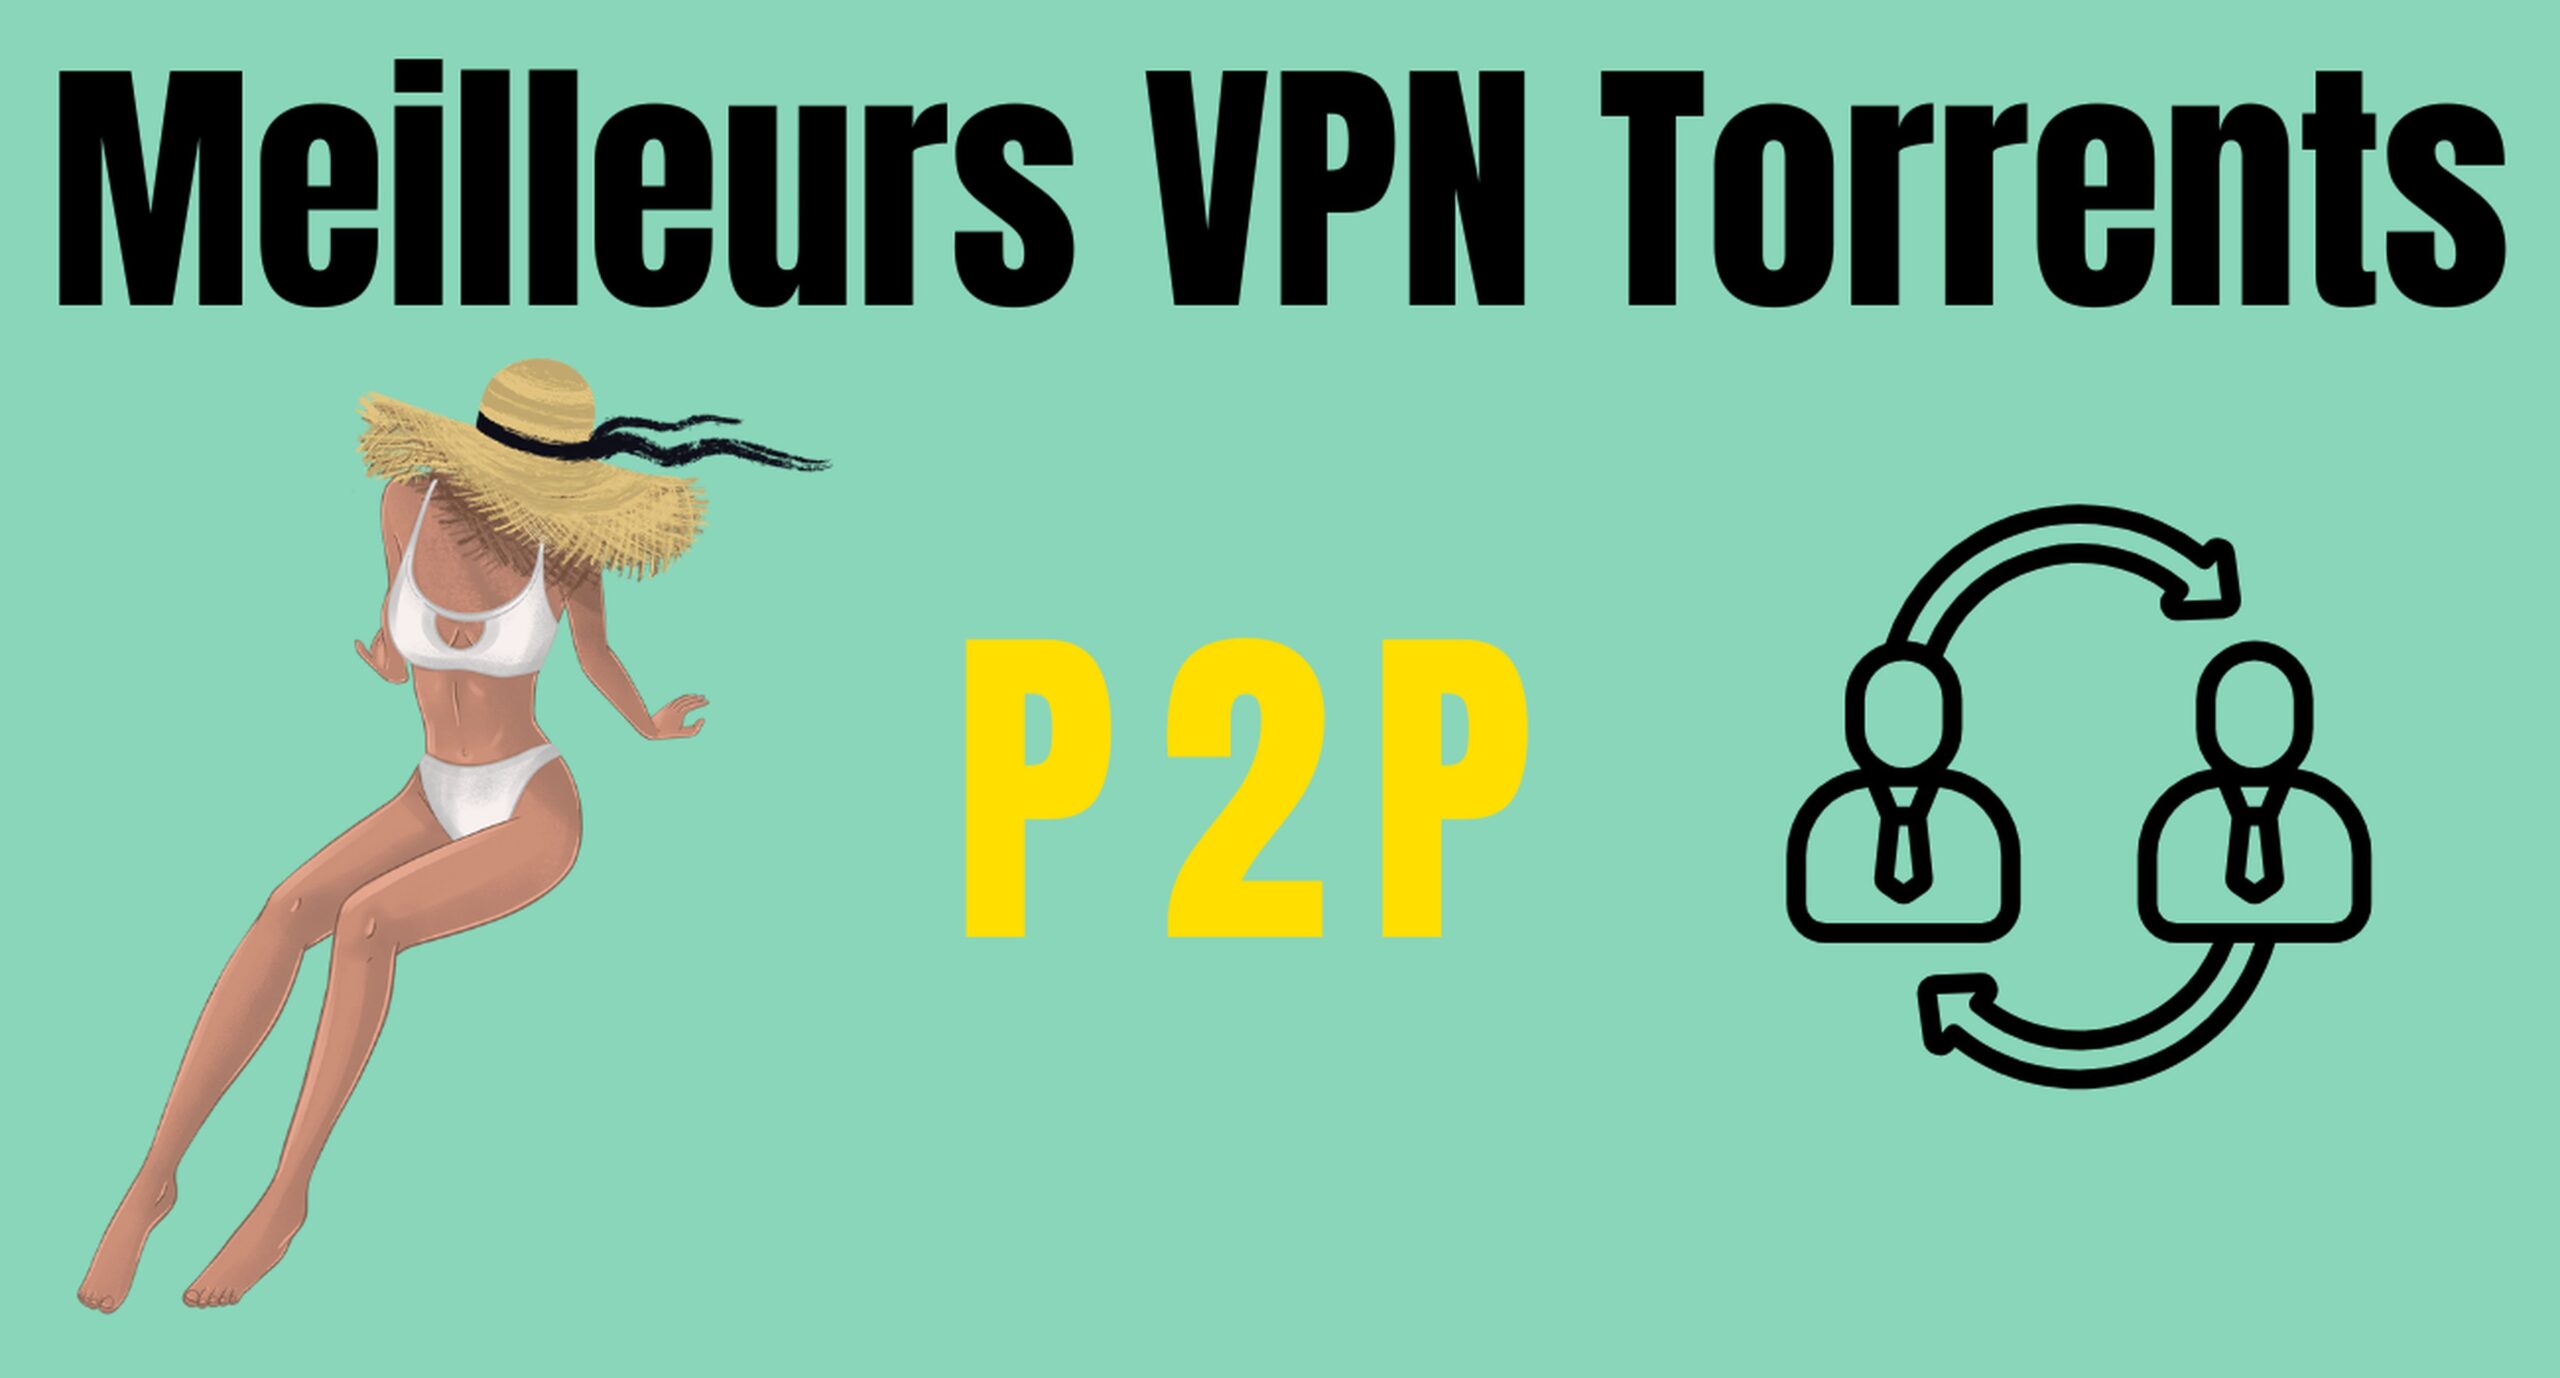 Meilleurs VPN Torrents